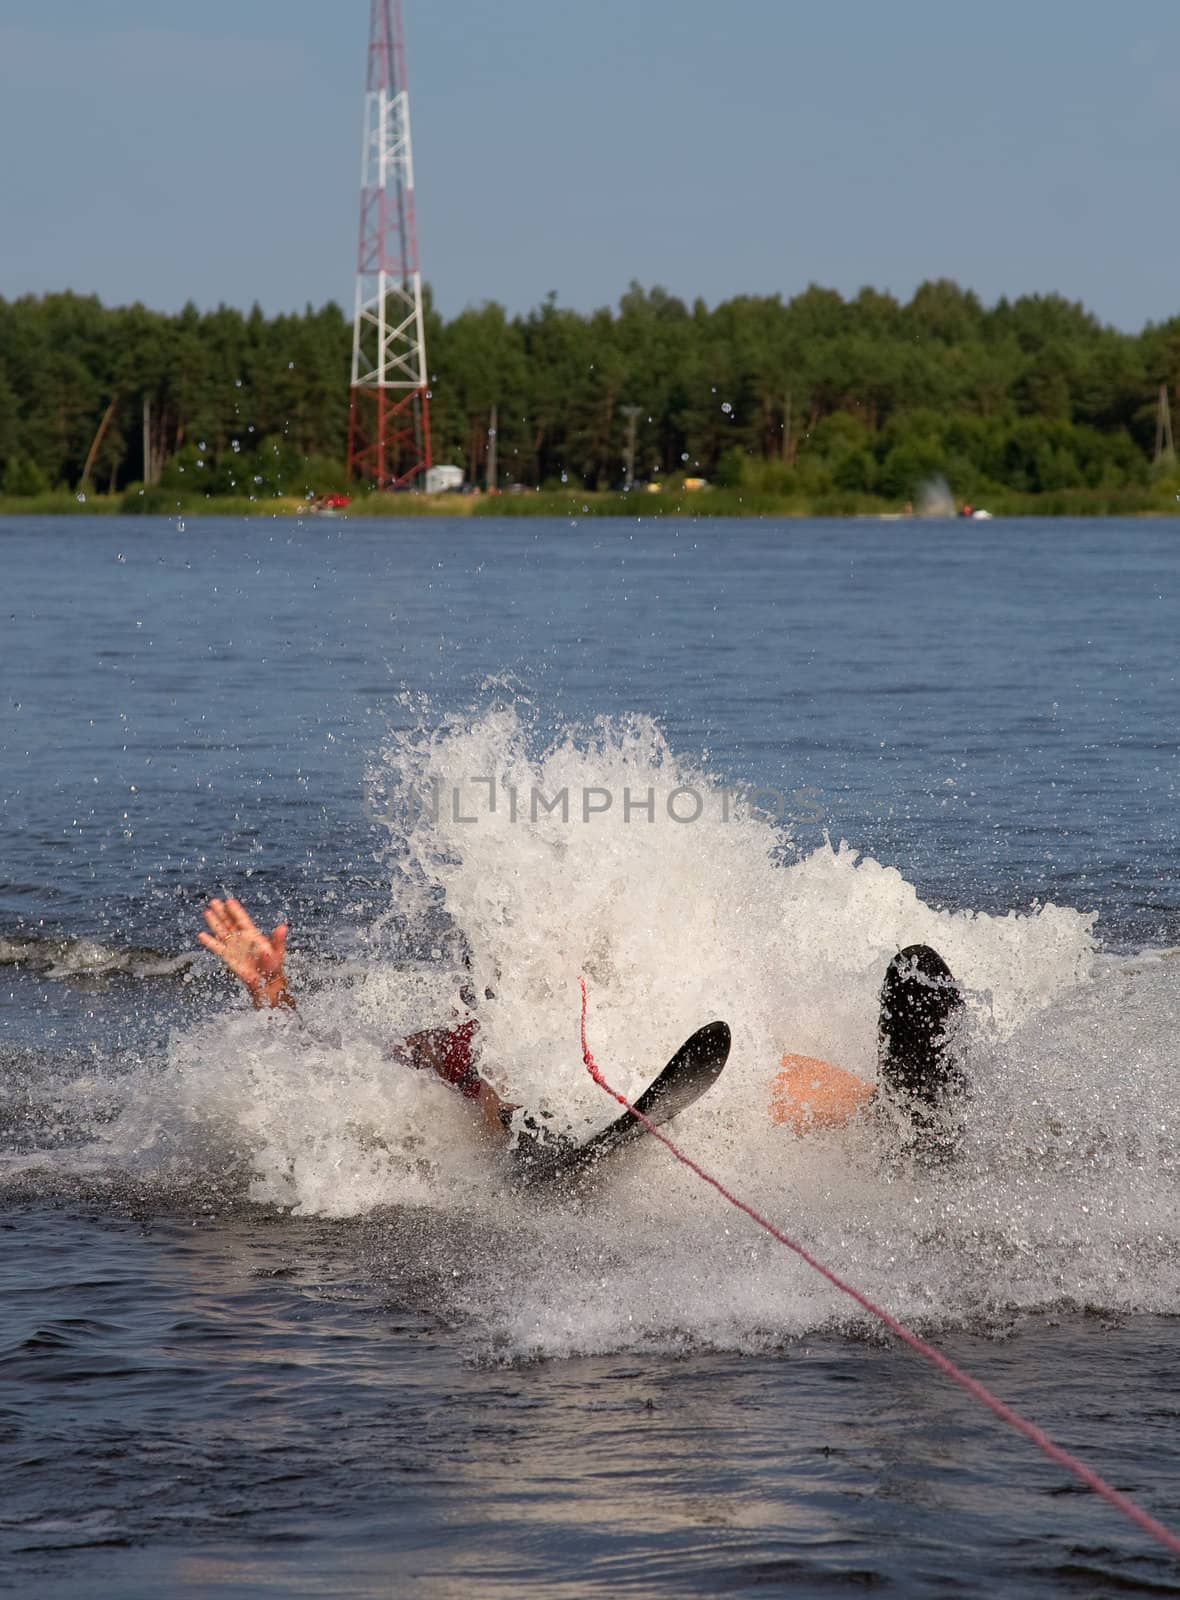 water ski falling by desant7474